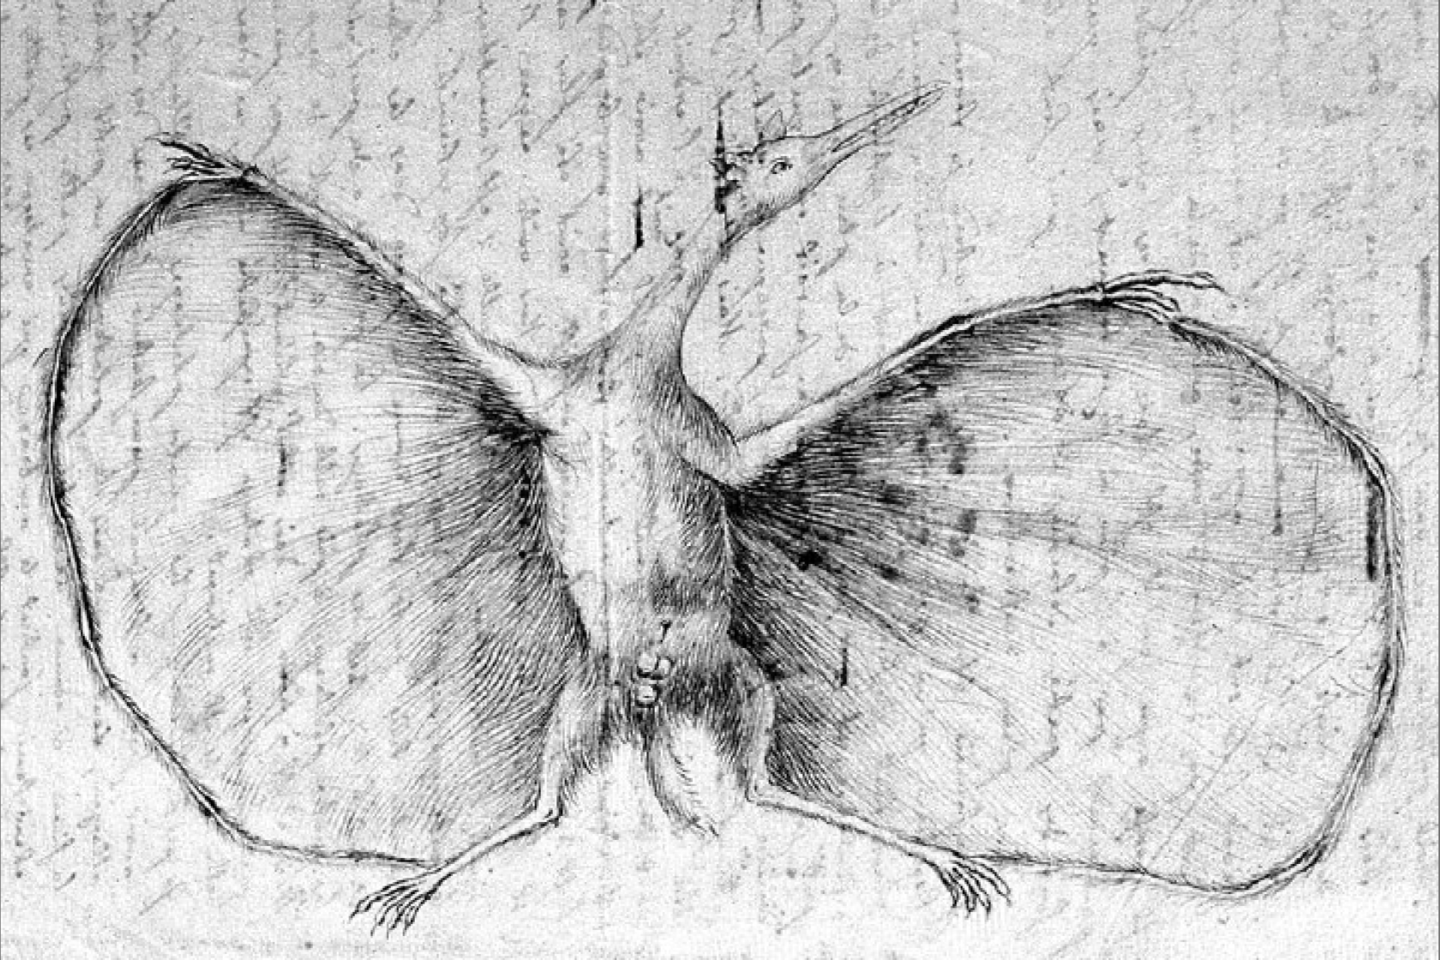  Pirmasis mokslinis pterozauro atvaizdas. Johano Germano piešinys, 1800 m.<br>Johano Germano pieš.